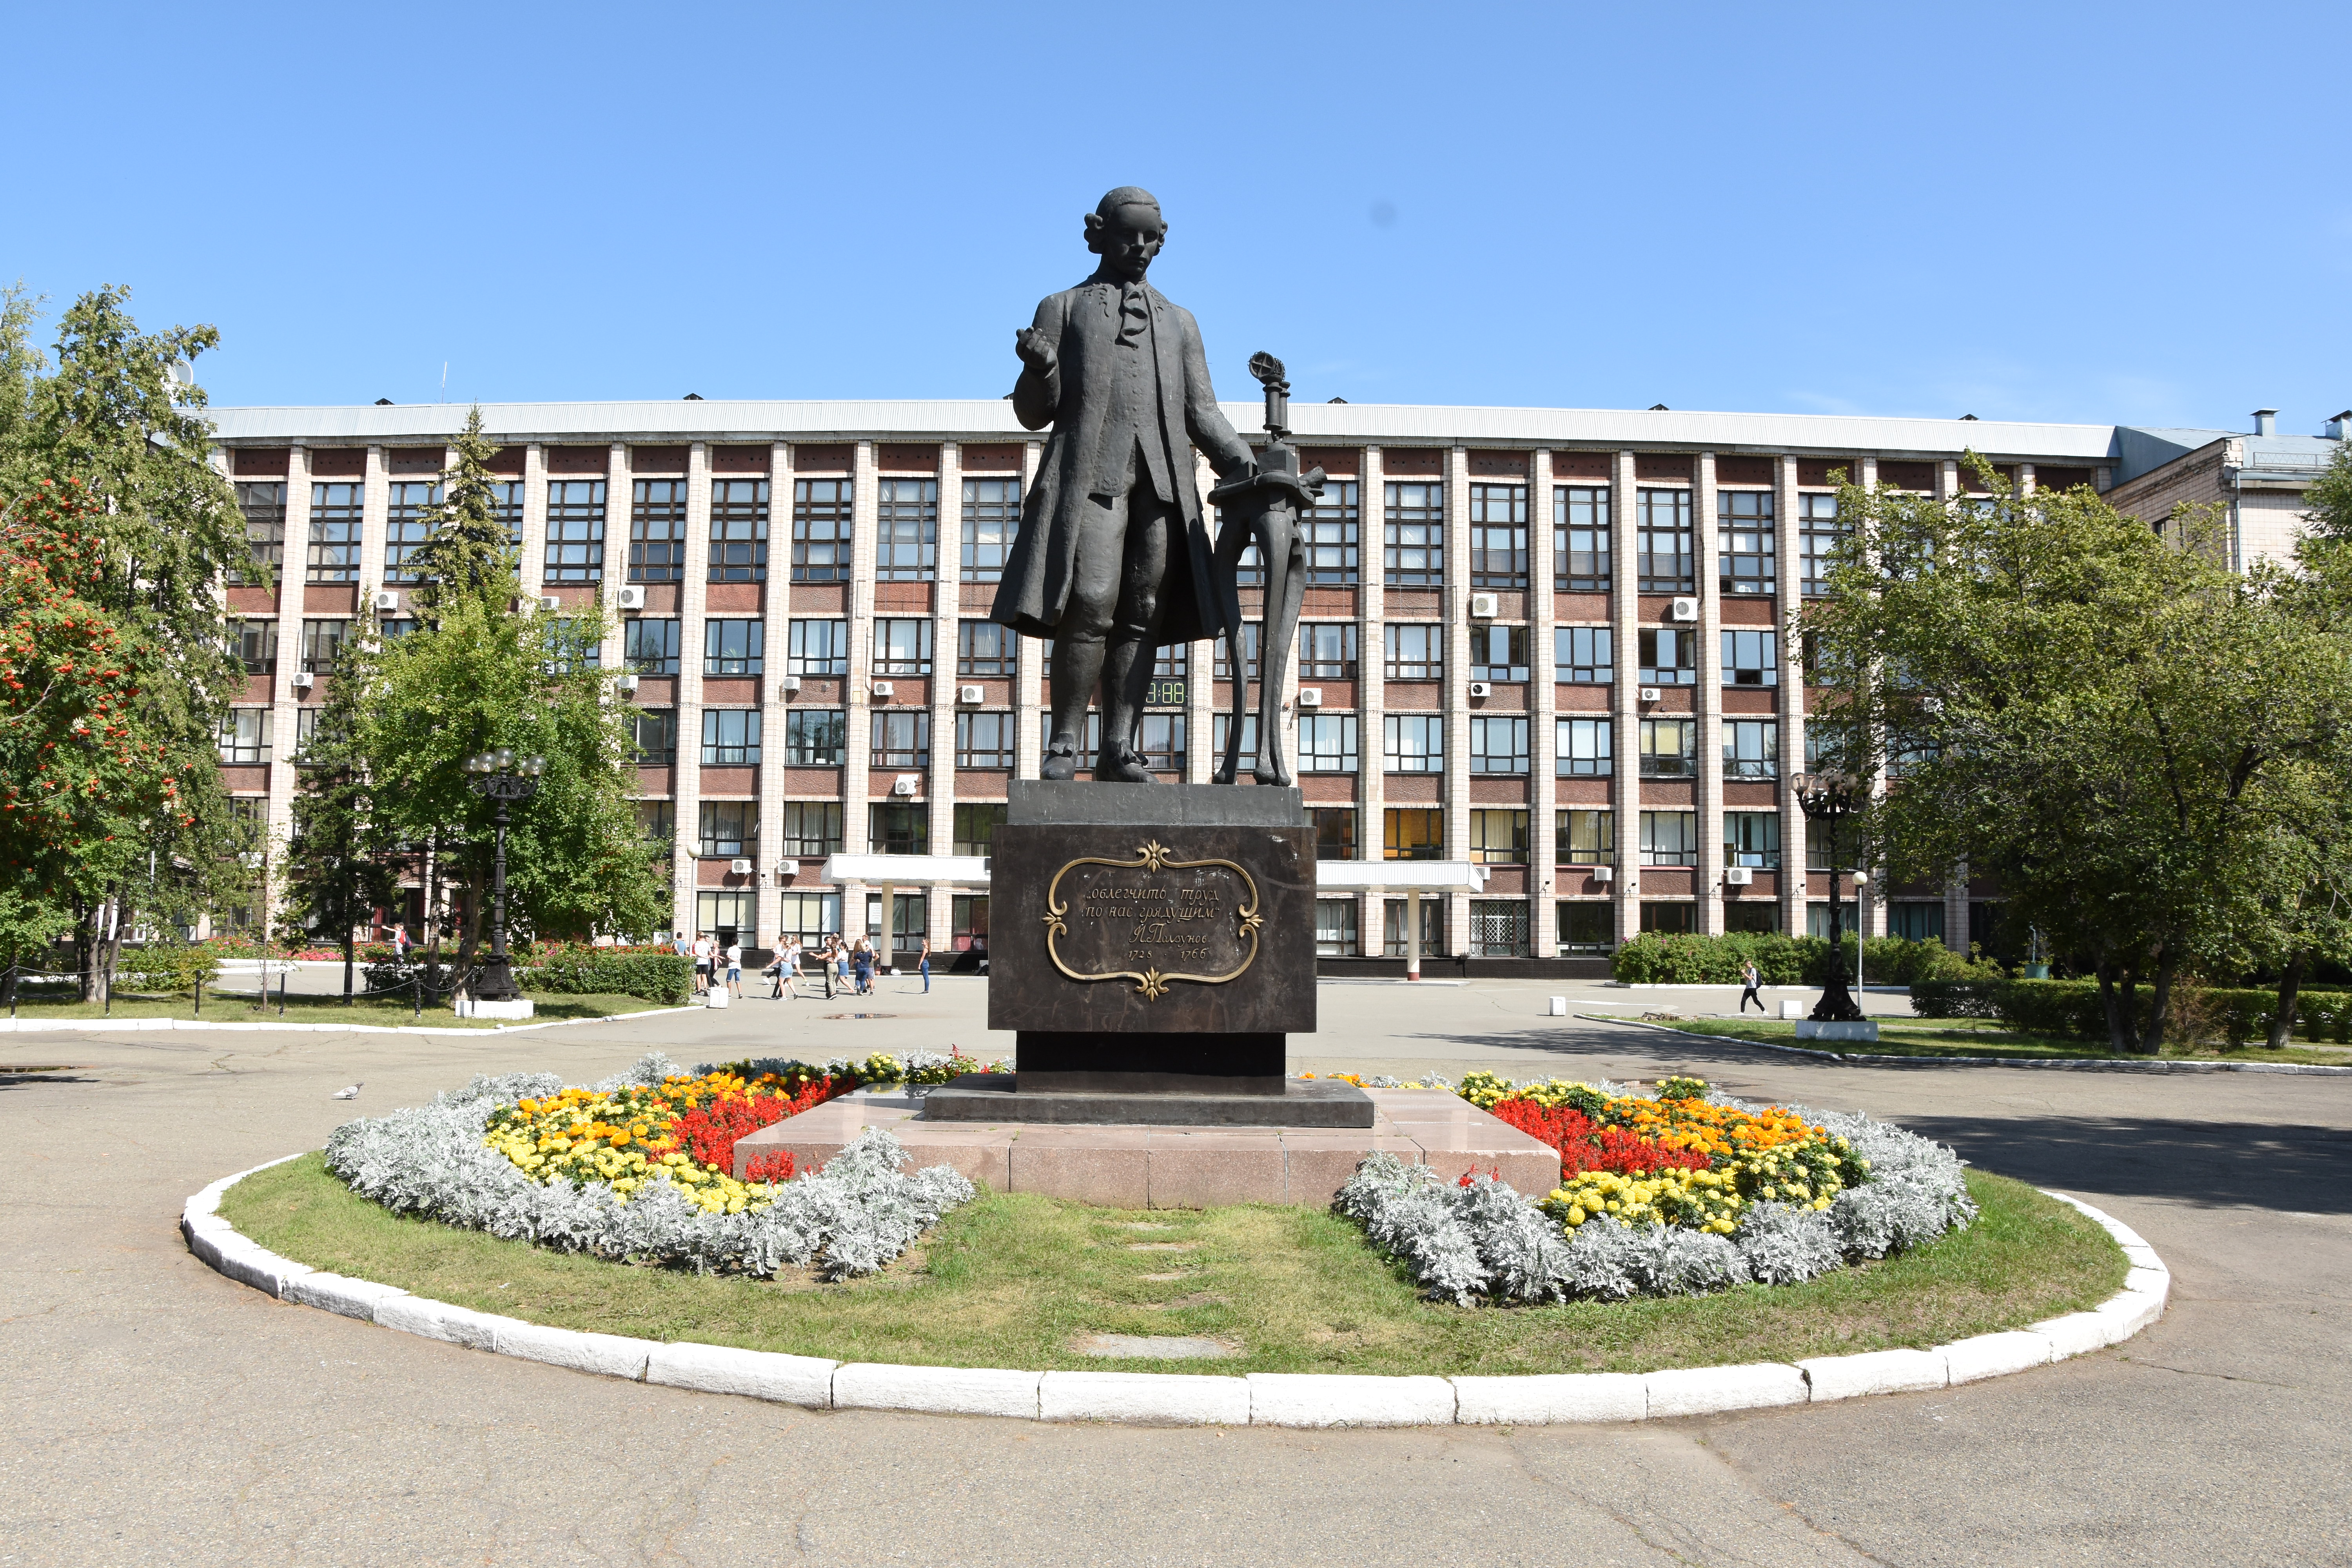 Минобрнауки России подержало программу АлтГТУ «Цифровой университет»